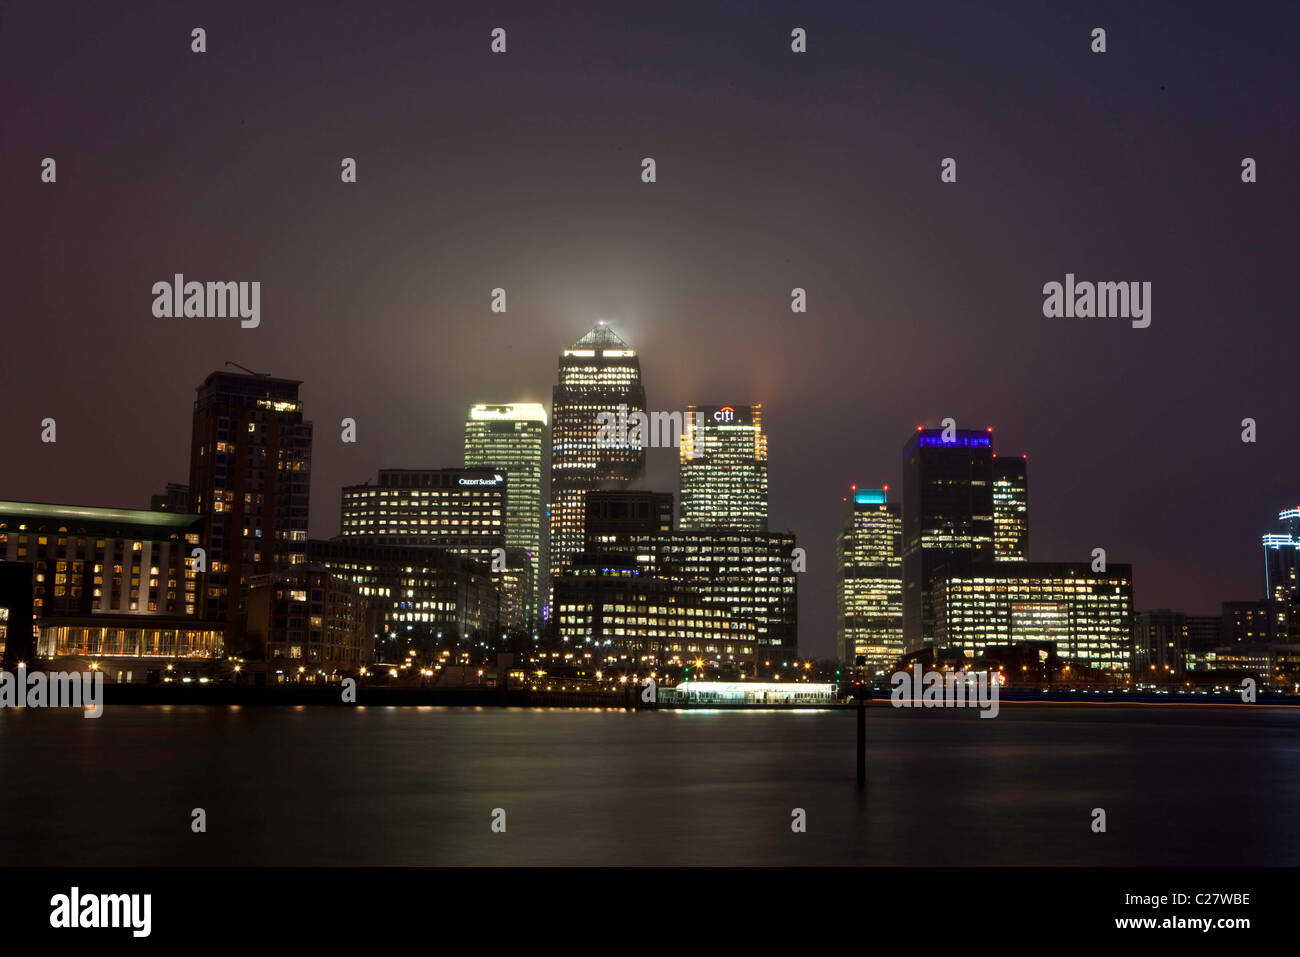 Docklands. Canary Wharf beleuchtet in der Nacht, London. Dies ist eines der Londoner Banken- und Geschäftsviertels. Stockfoto